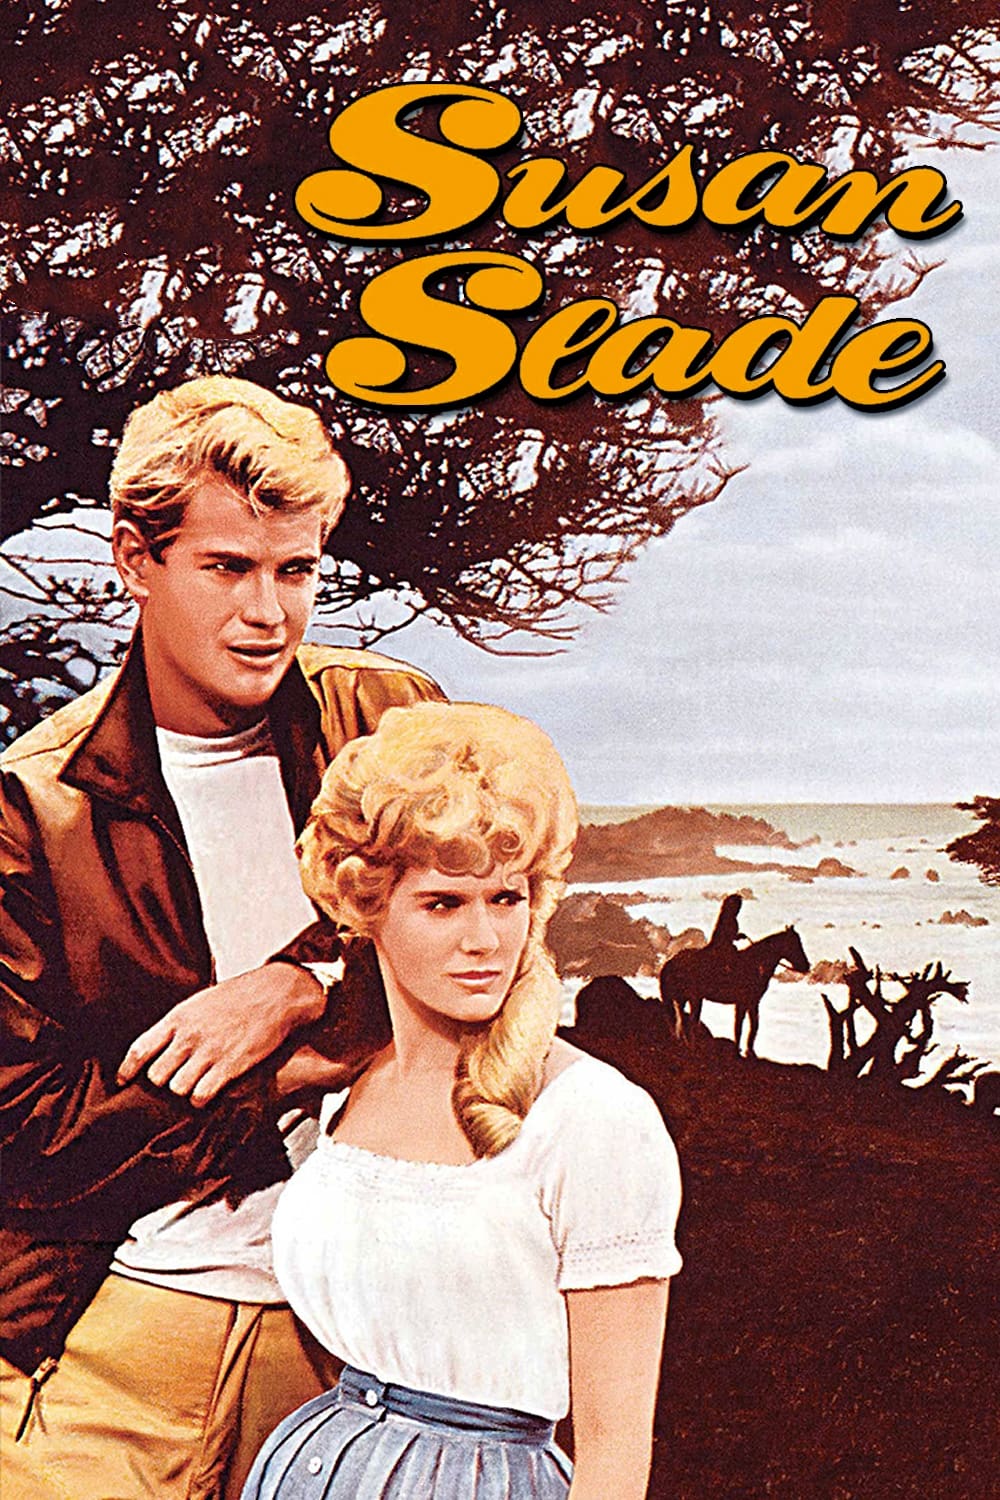 دانلود صوت دوبله فیلم Susan Slade 1961